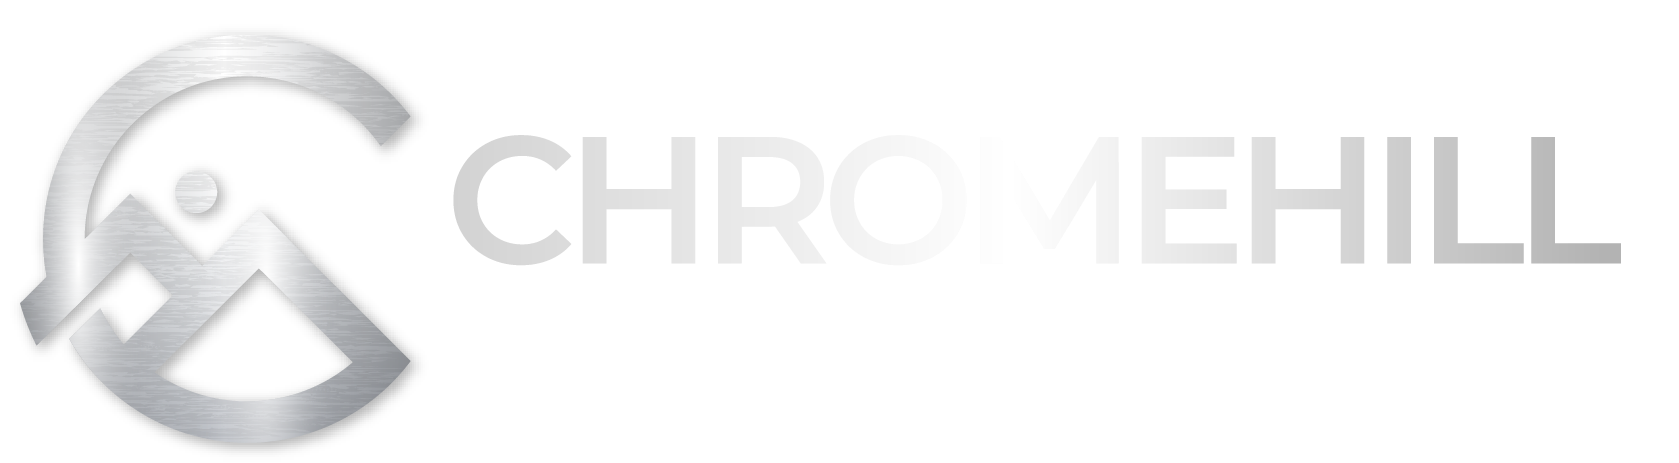 Chromehill company logo